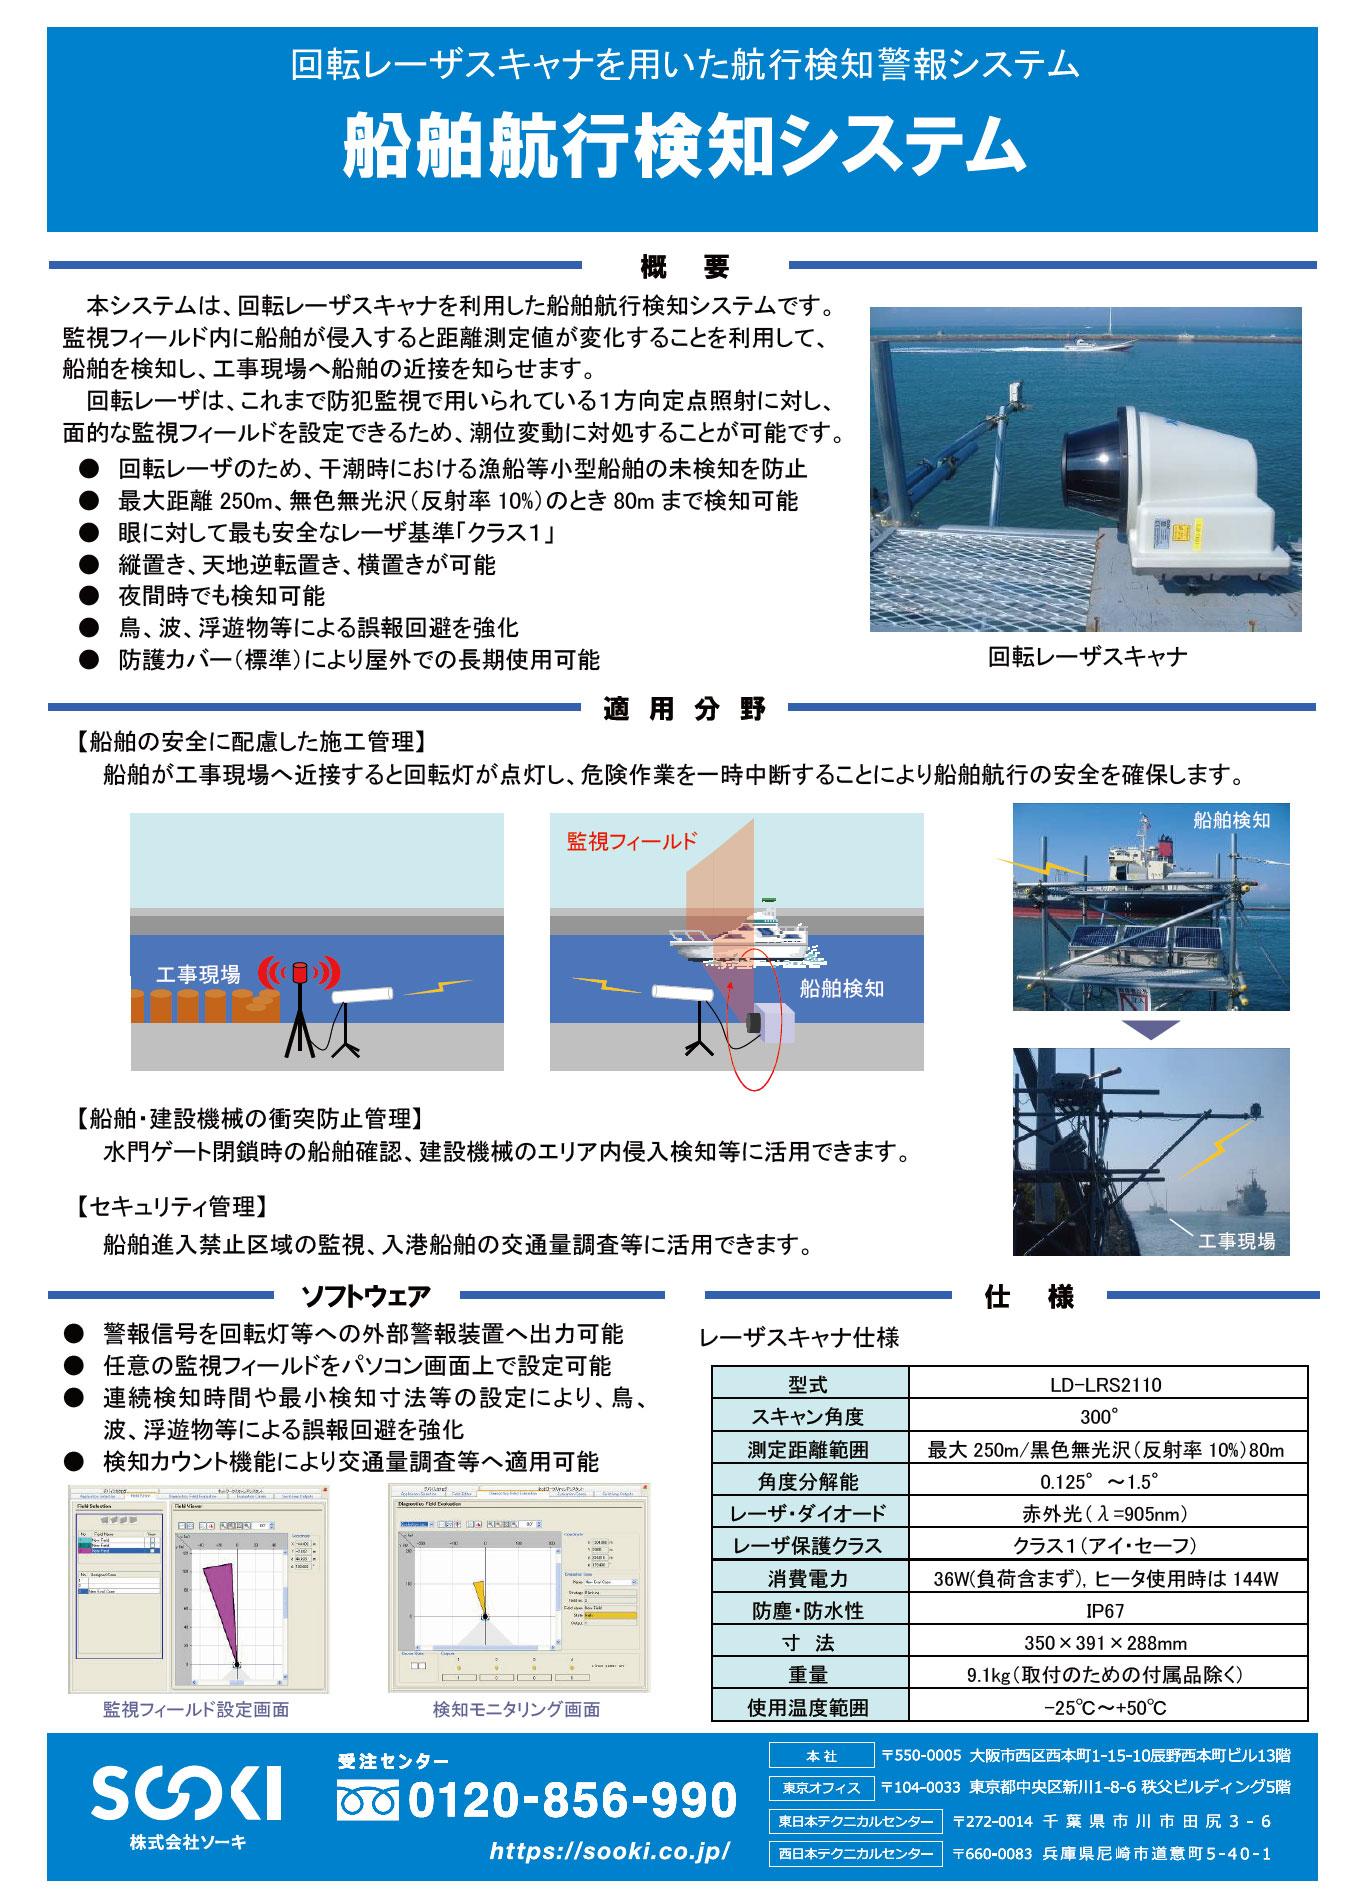 船舶航行検知システム